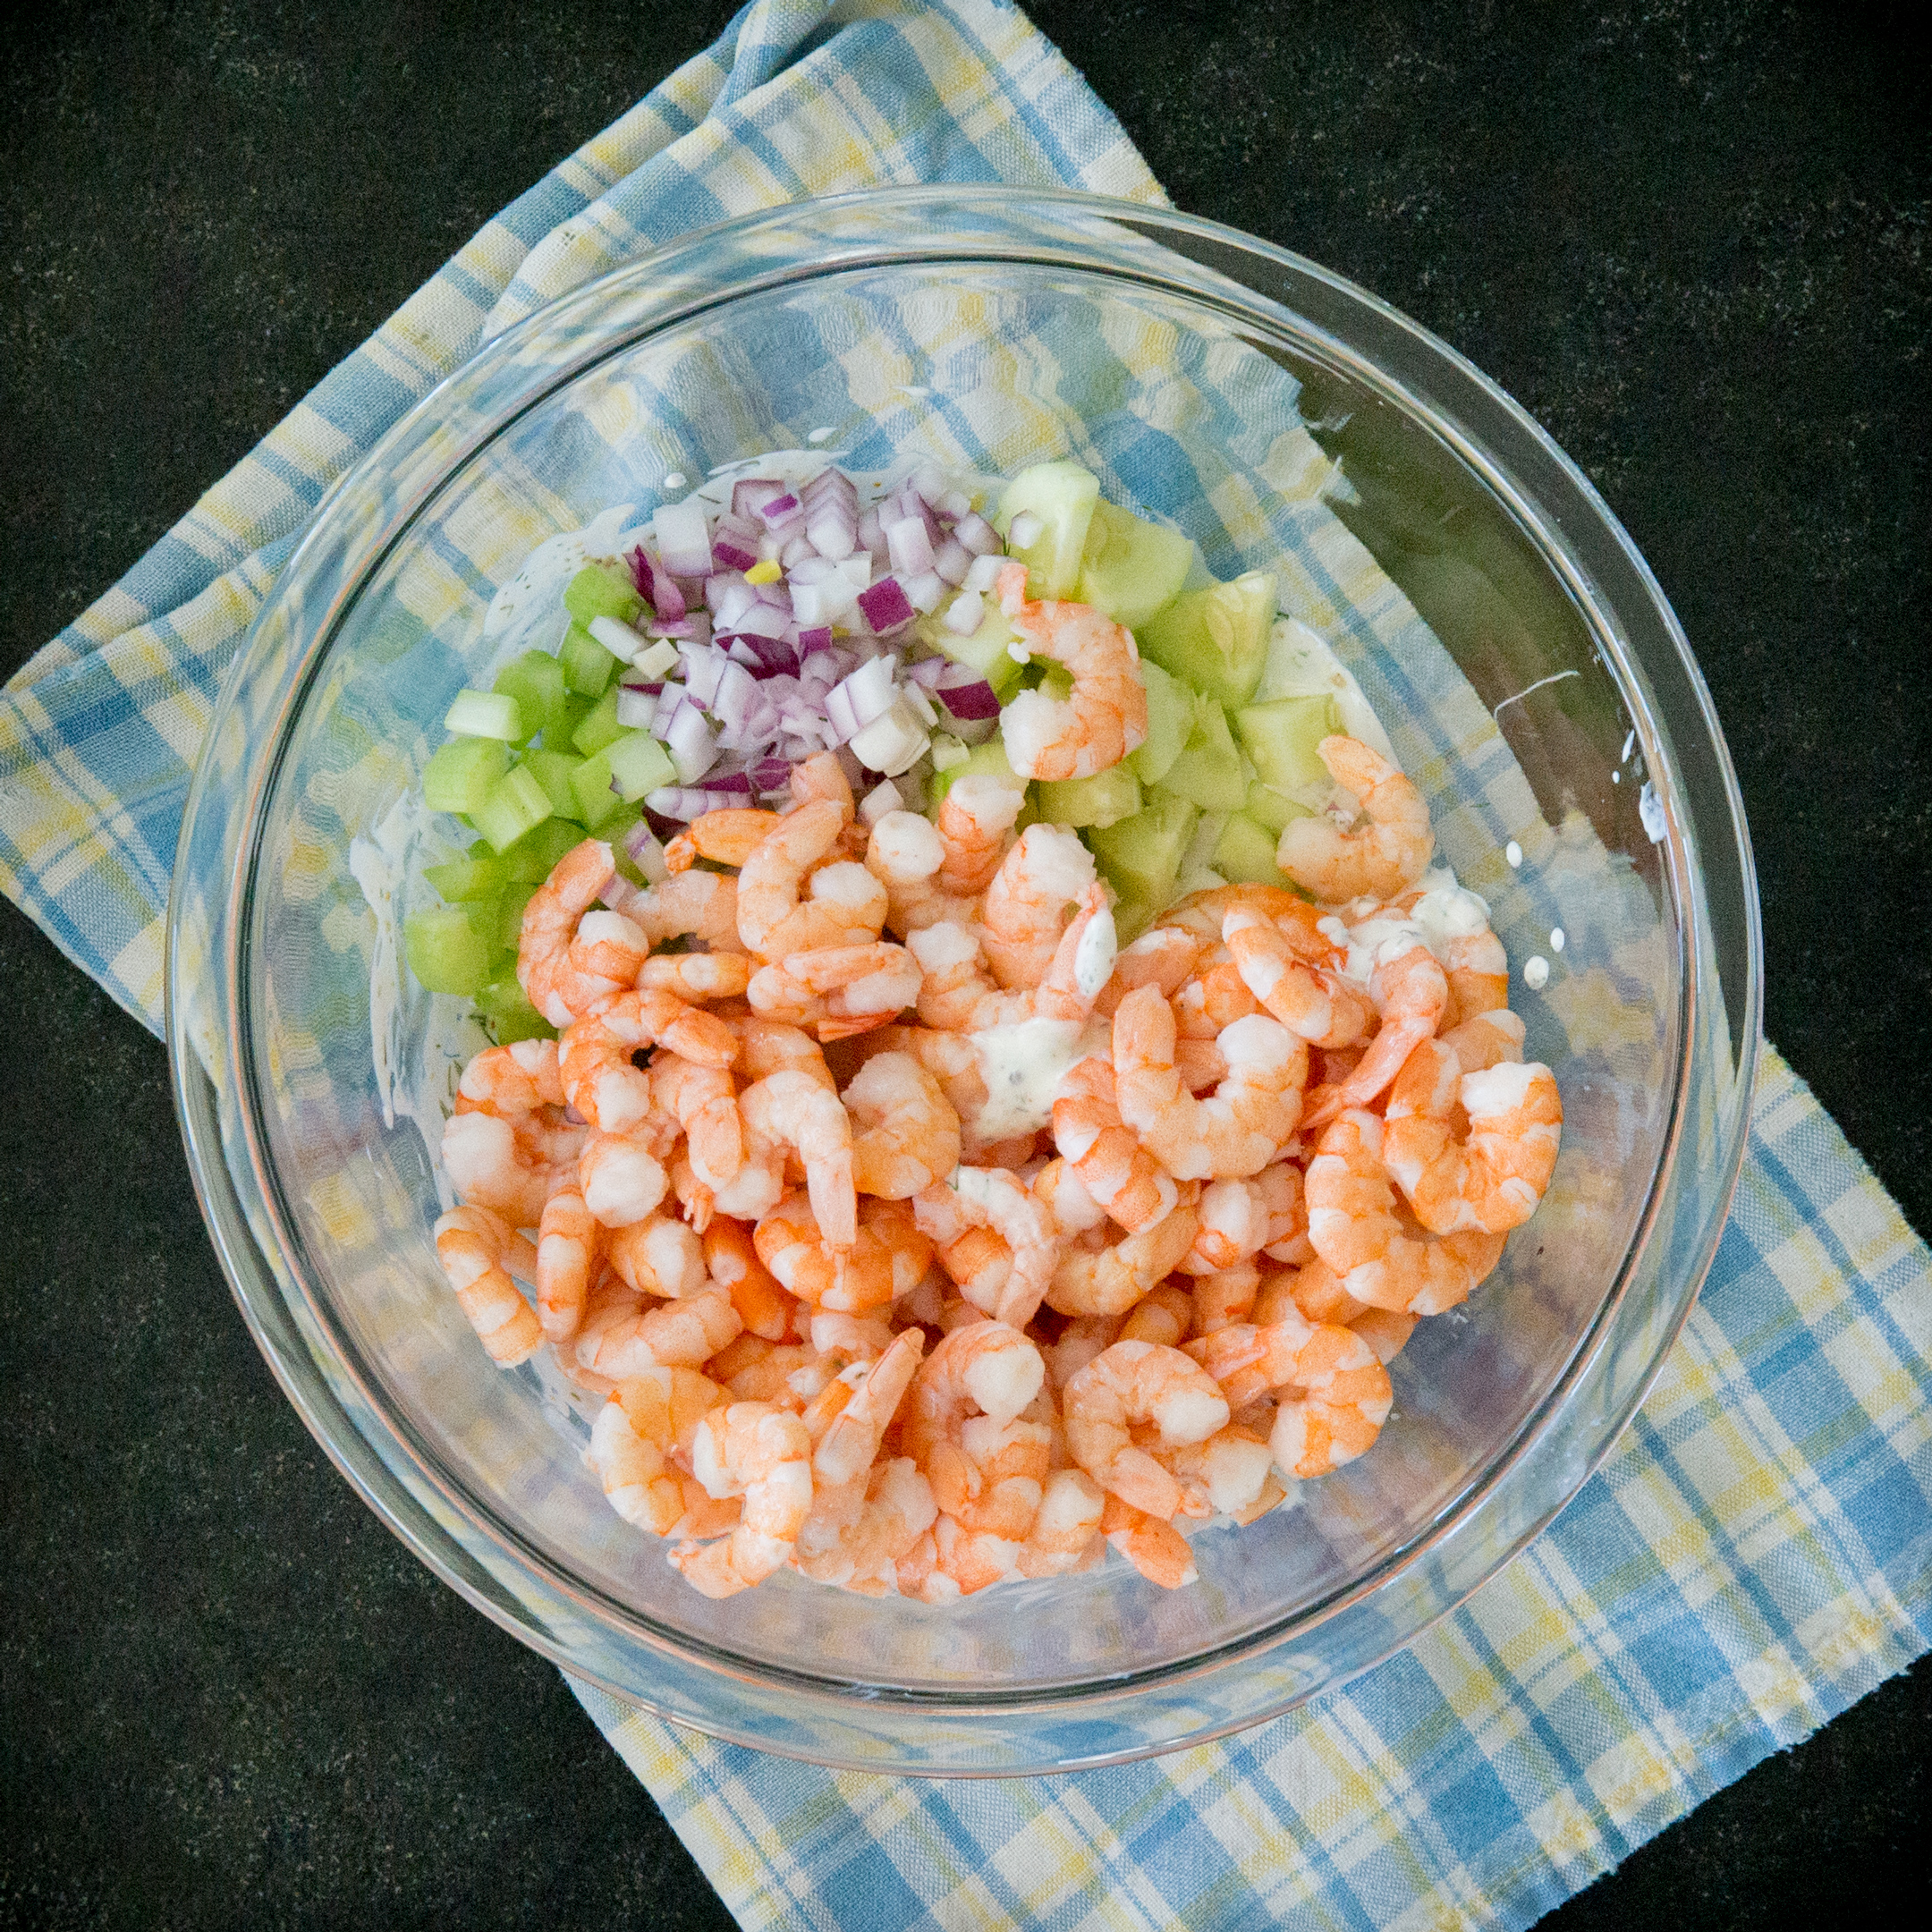 Easy Shrimp Salad • Salt & Lavender